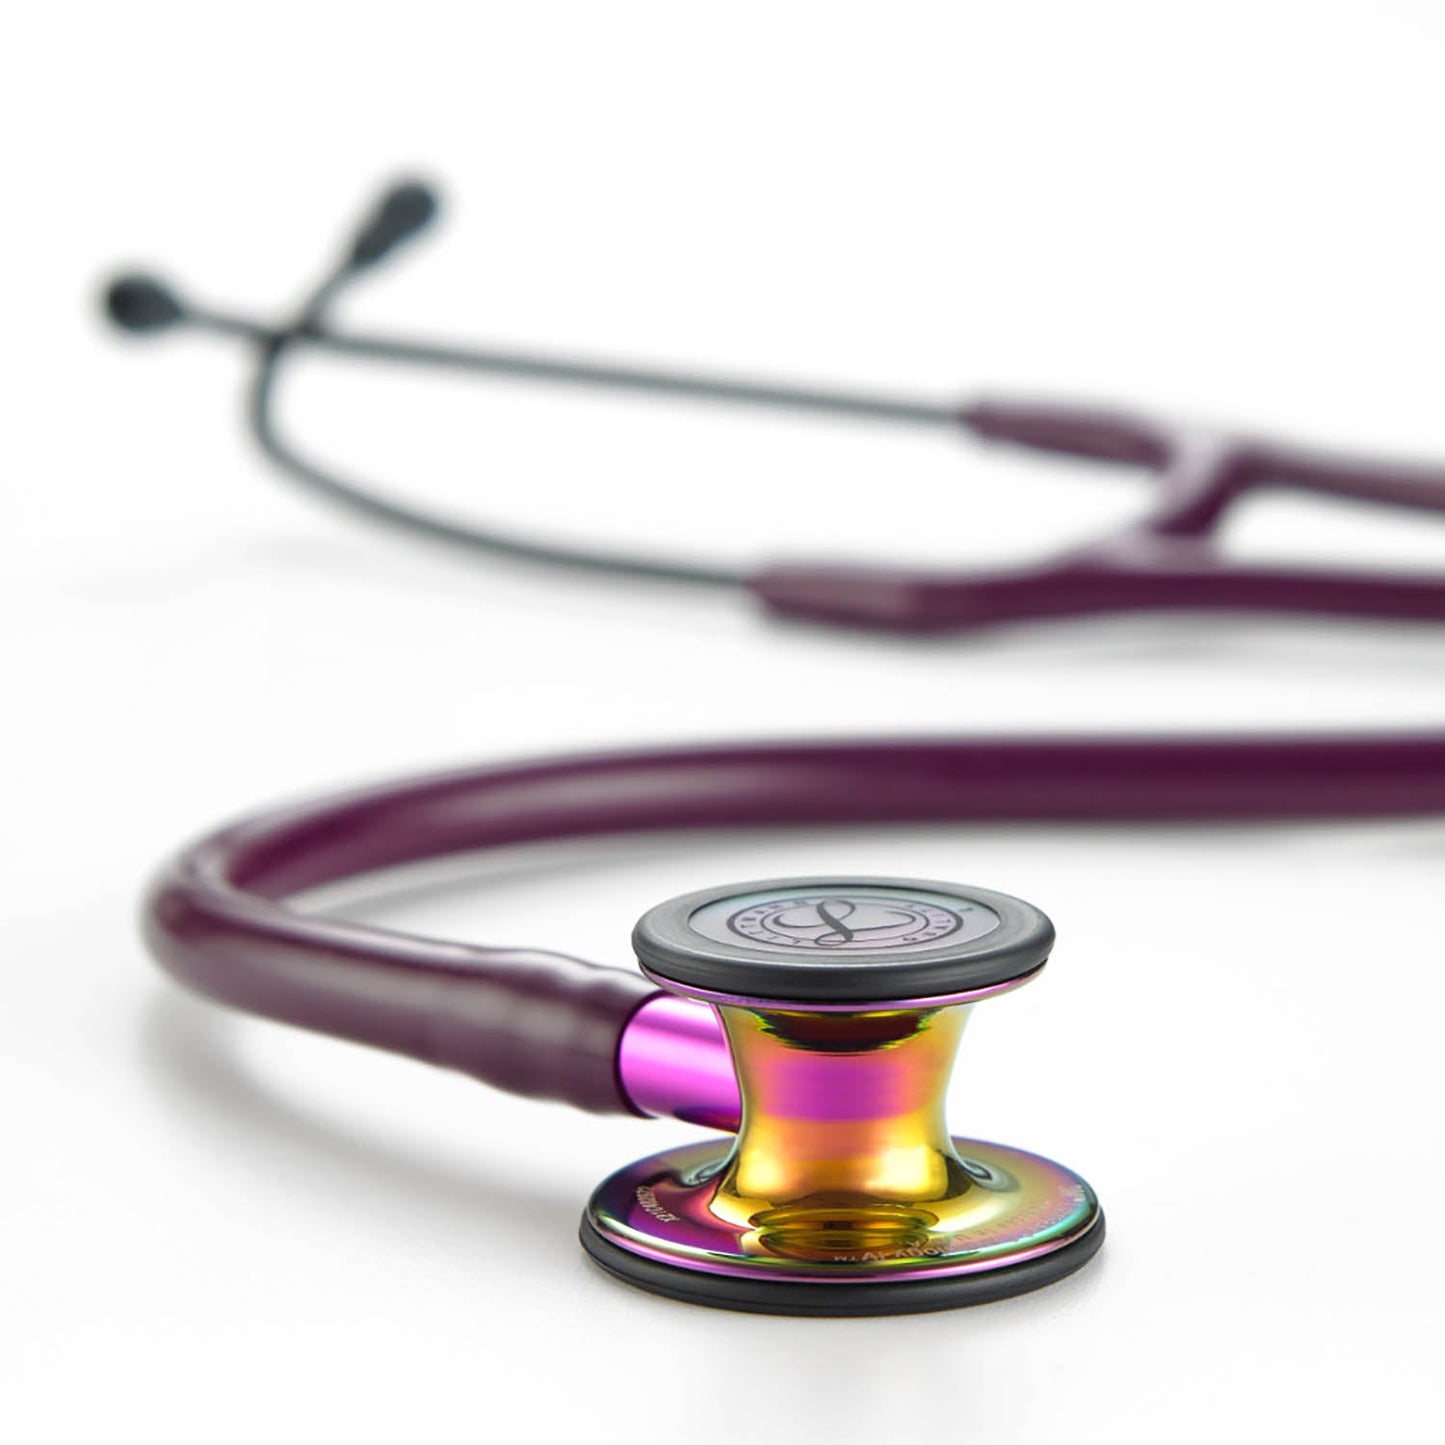 Stéthoscope de diagnostic 3M™ Littmann® Cardiology IV™, tubulure prune, Rainbow Edition, base violet, 69 cm, 6205